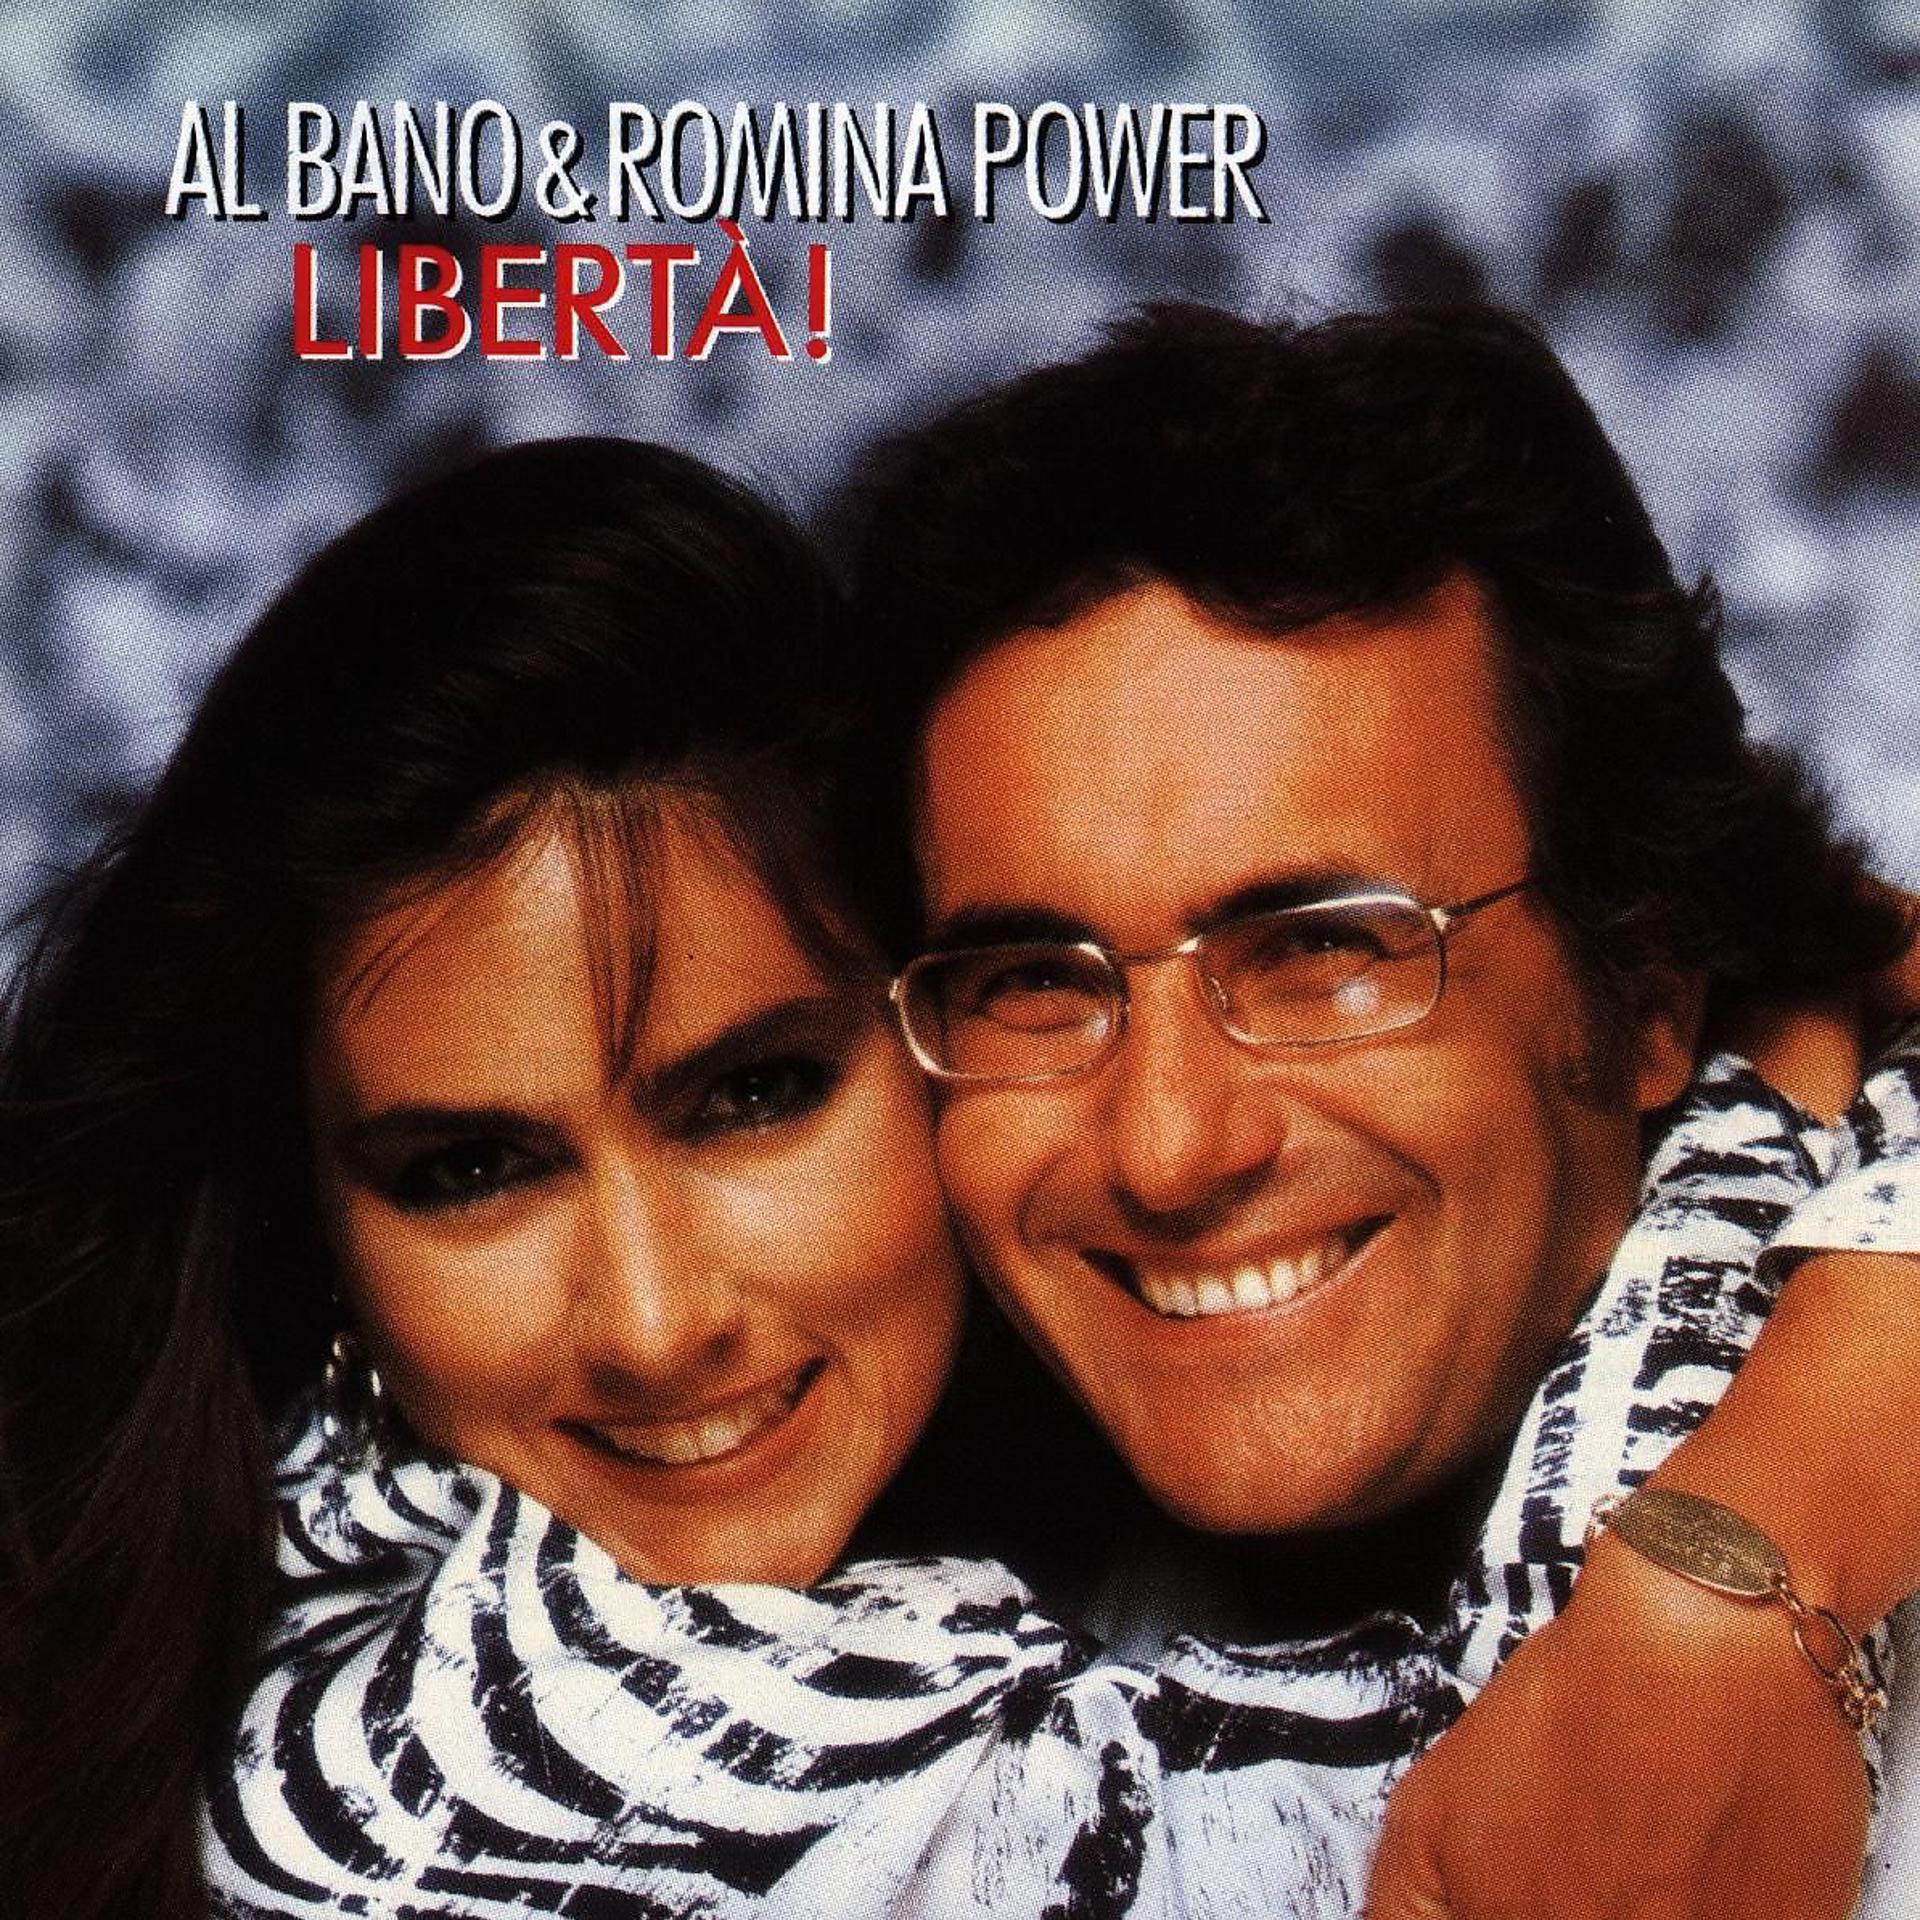 Аль бано ромина слушать песню. Аль Бано и Ромина Пауэр. Аль Бано и Ромина Liberta. Al bano & Romina Power Liberta 1987 LP. Аль Бано и Ромина - Либерта.